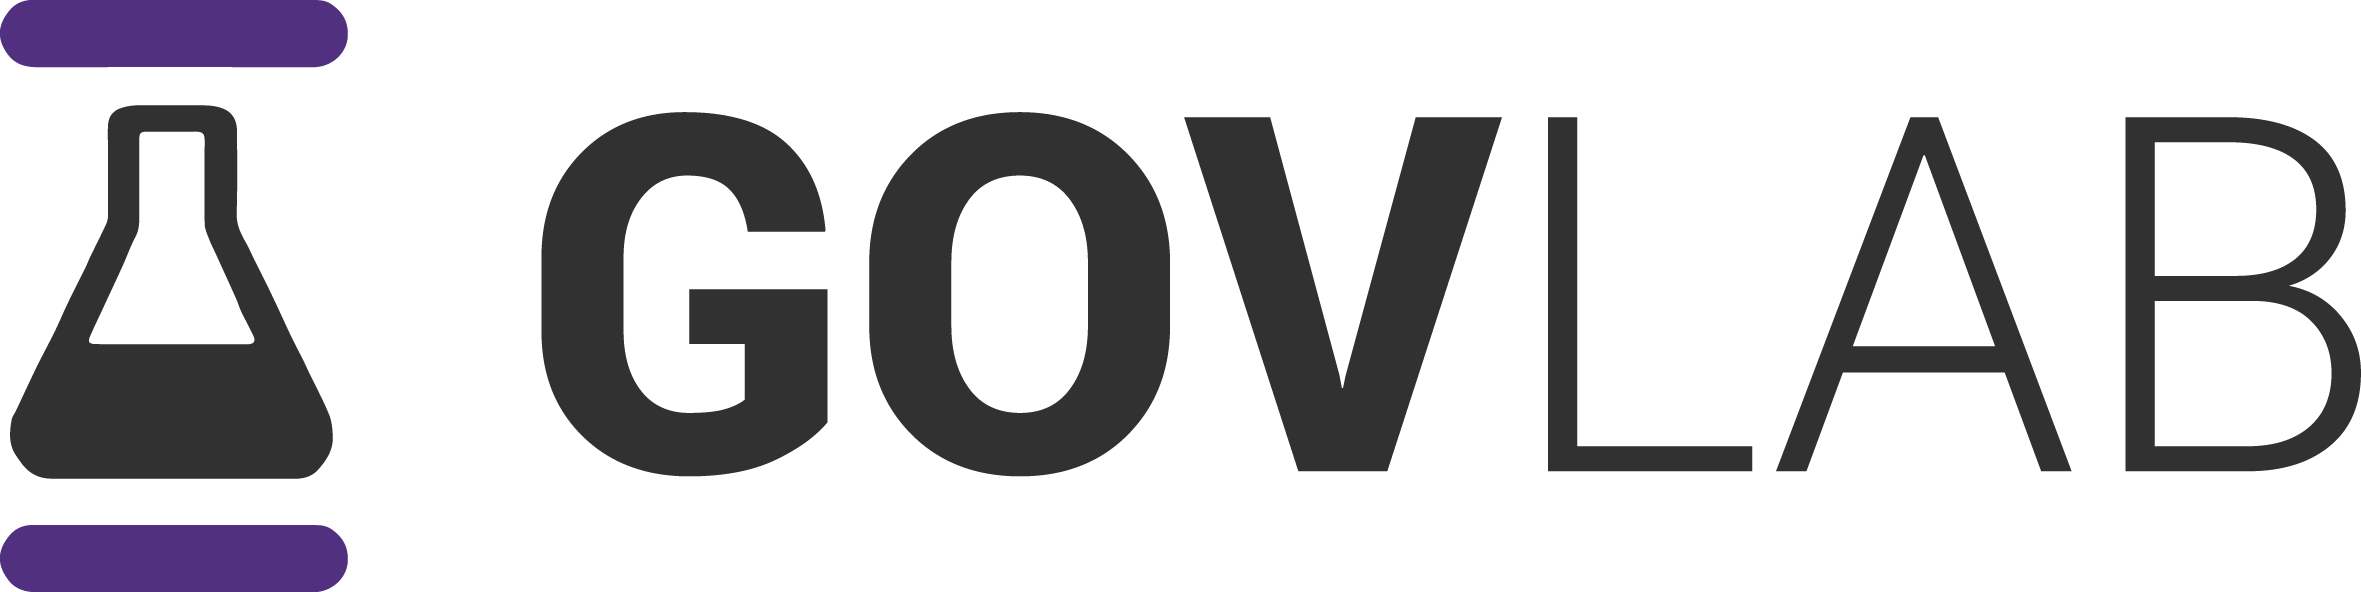 NYU Gov Lab logo